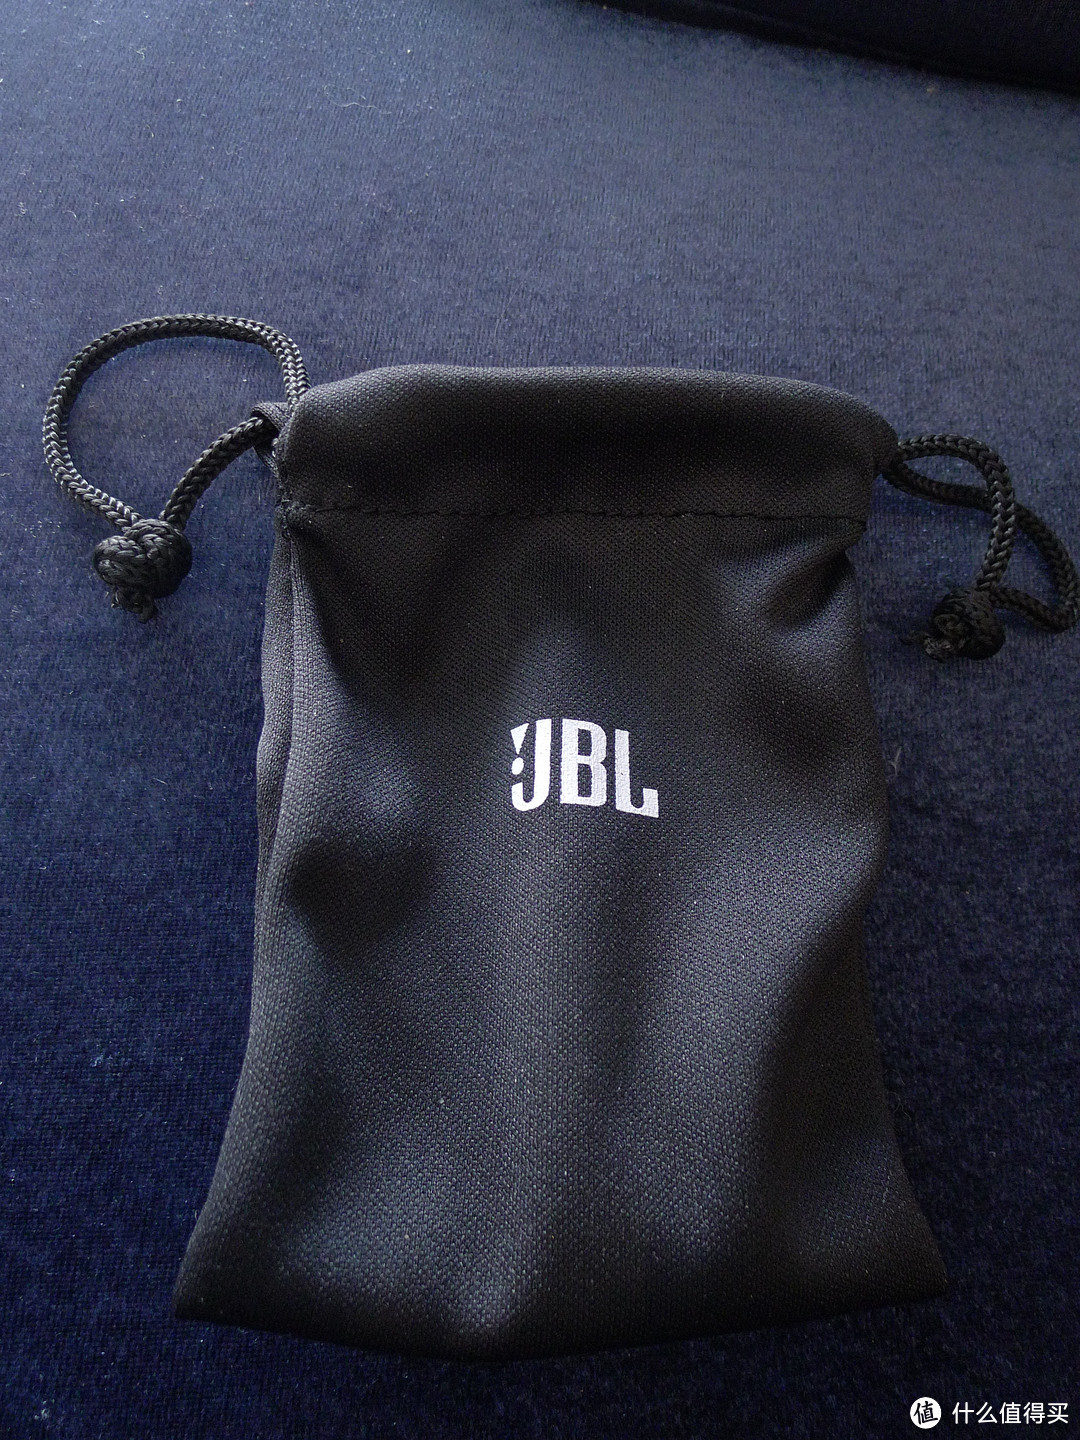 中规中矩，质价相当——JBLT280A耳机评测